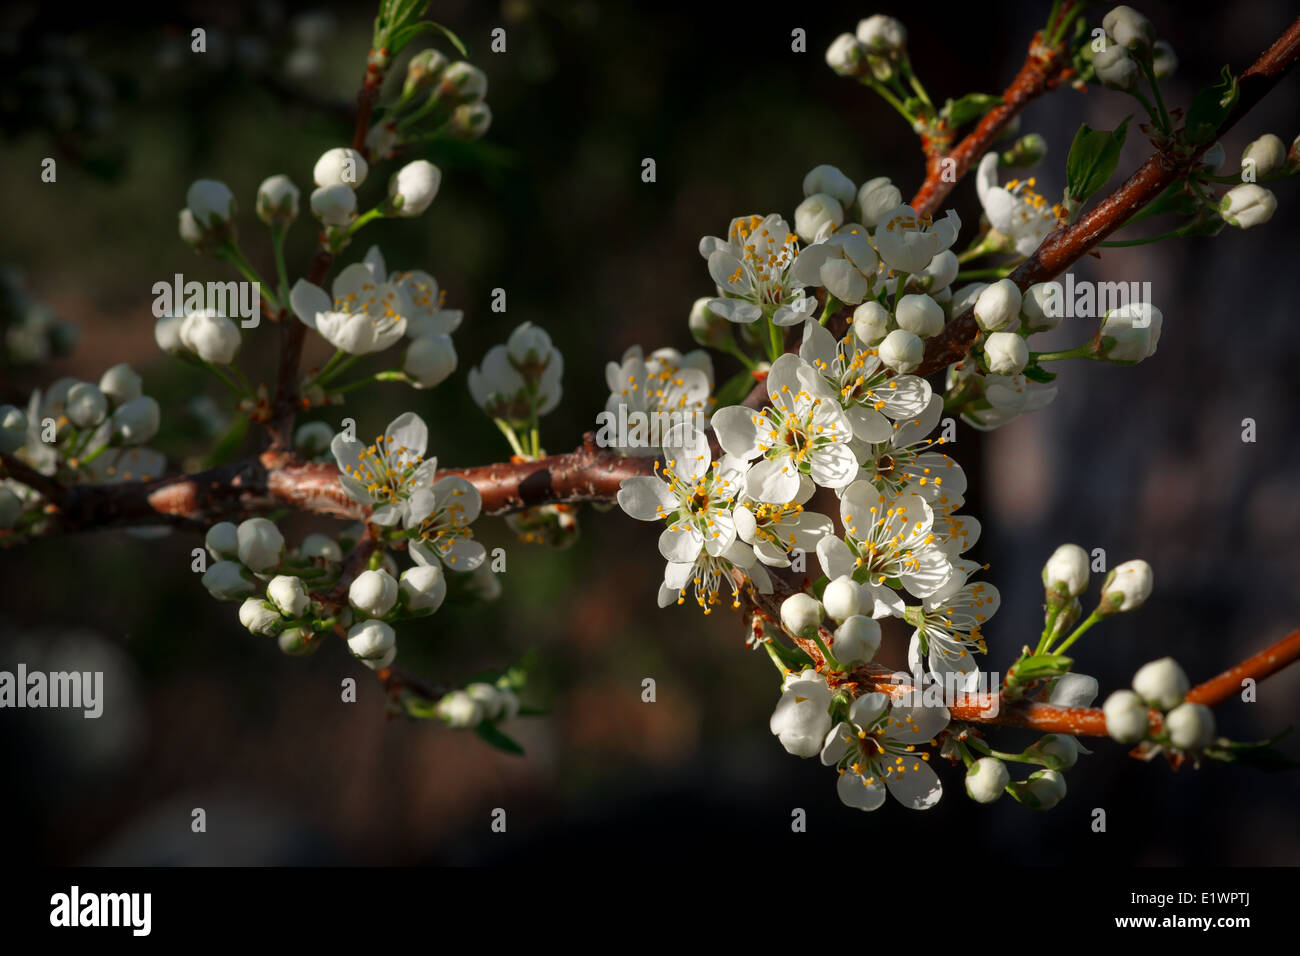 Pequeñas flores de ciruela blancas en una rama del árbol de ciruela comienza a abrir a principios de la primavera. Foto de stock